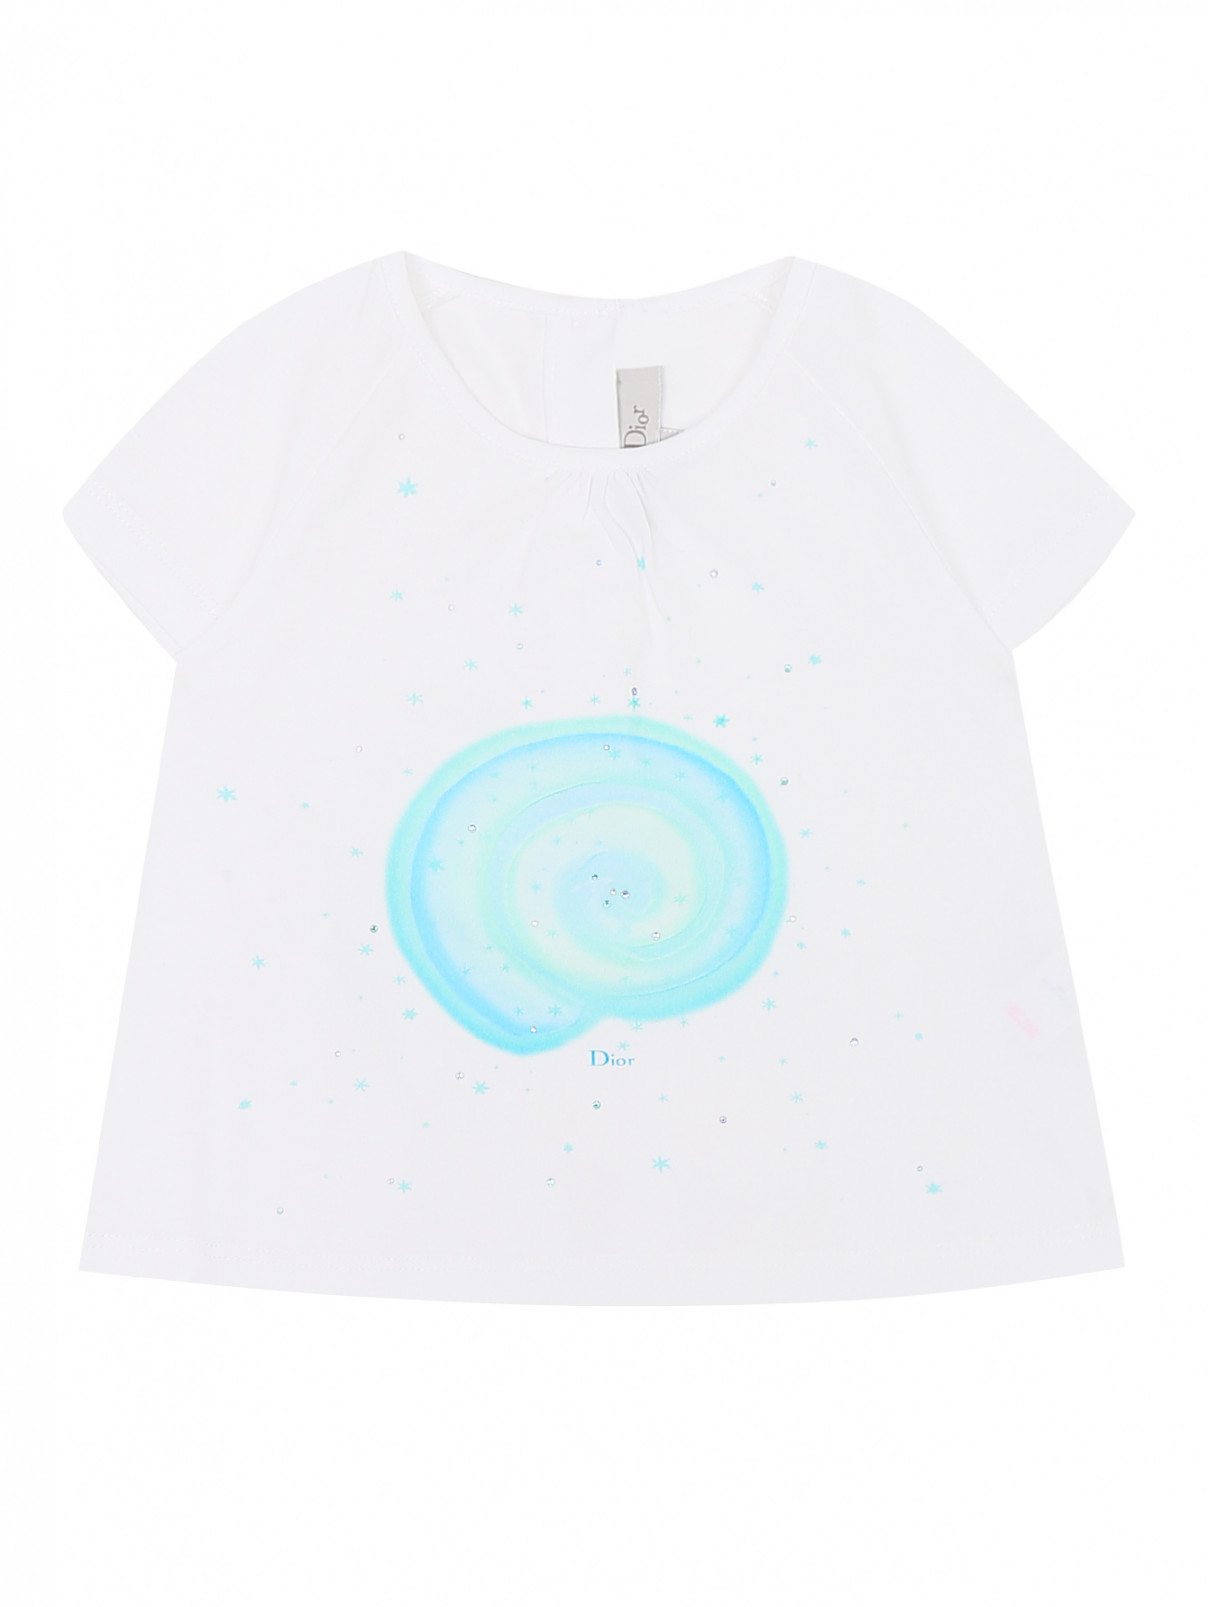 Хлопковая футболка  с принтом Baby Dior  –  Общий вид  – Цвет:  Белый